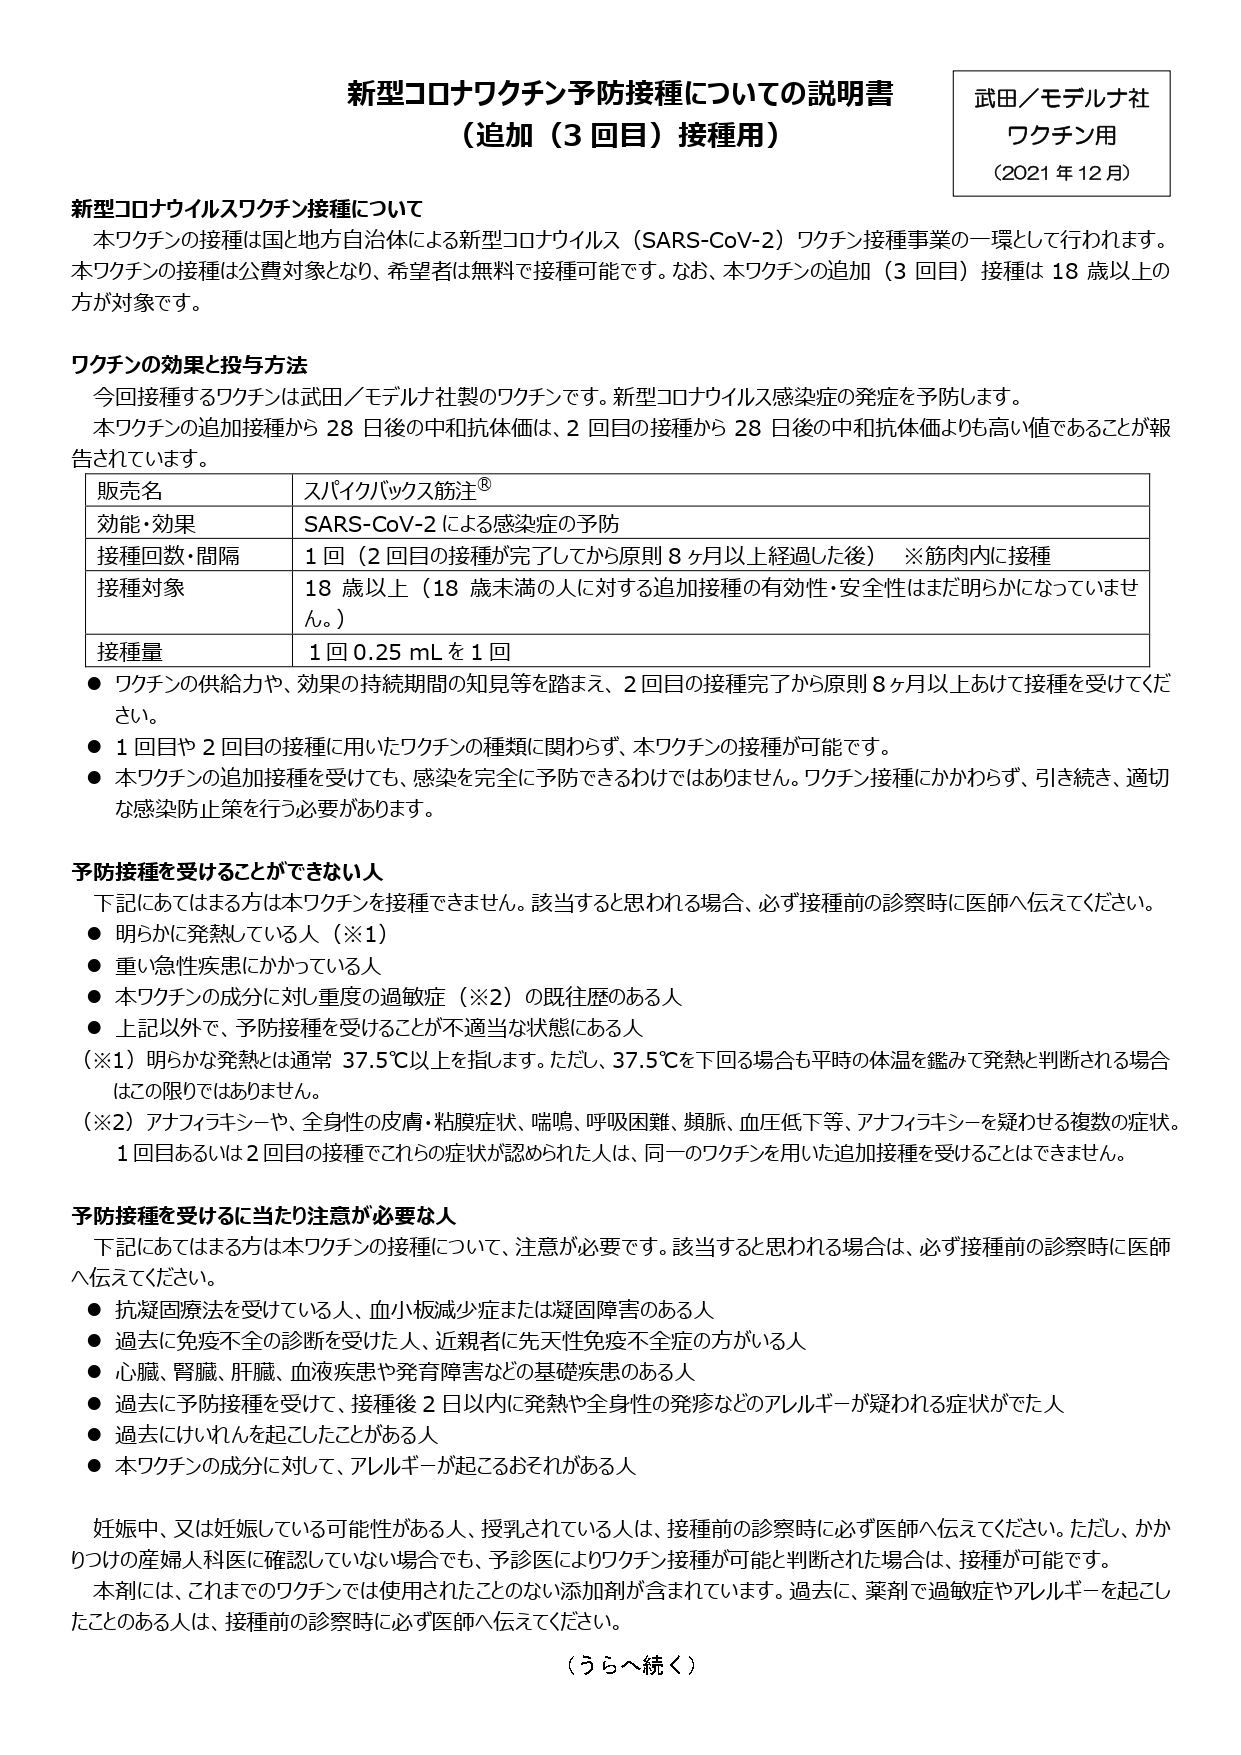 【武田・モデルナ社ワクチン用】新型コロナワクチン予防接種についての説明書（追加（3回目）接種用）表